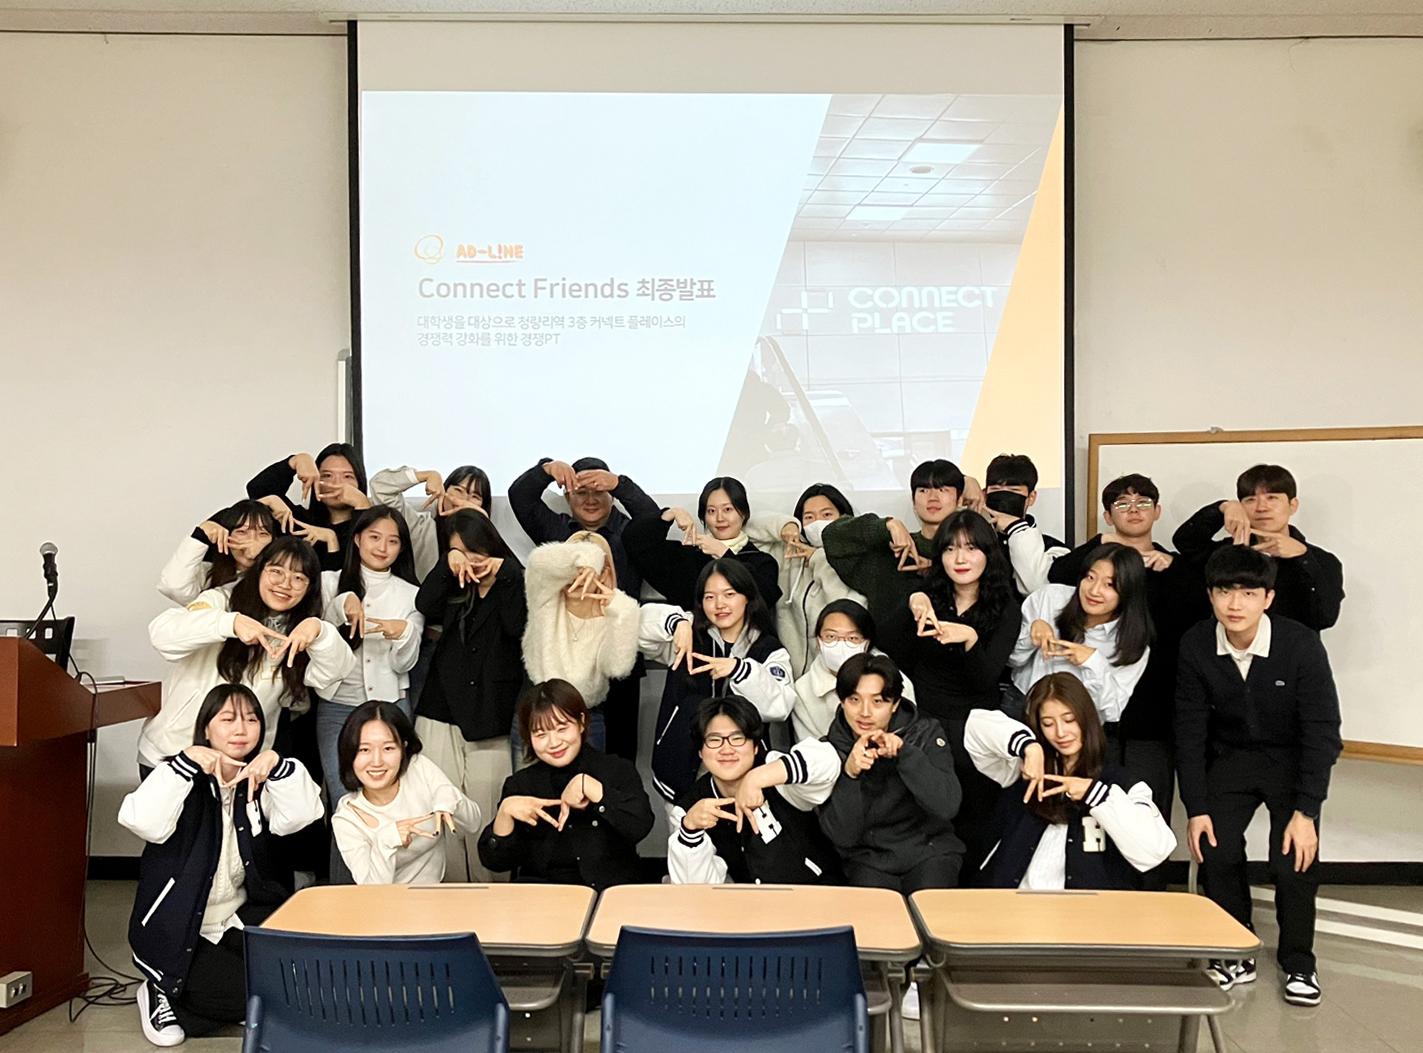 지난 9일, 한국외국어대학교에서 진행한 ‘커넥트플레이스 청춘 광고제’에 참여한 ‘커넥트 프렌즈’ 학생들과 한화커넥트 임직원이 기념 사진을 촬영하고 있다